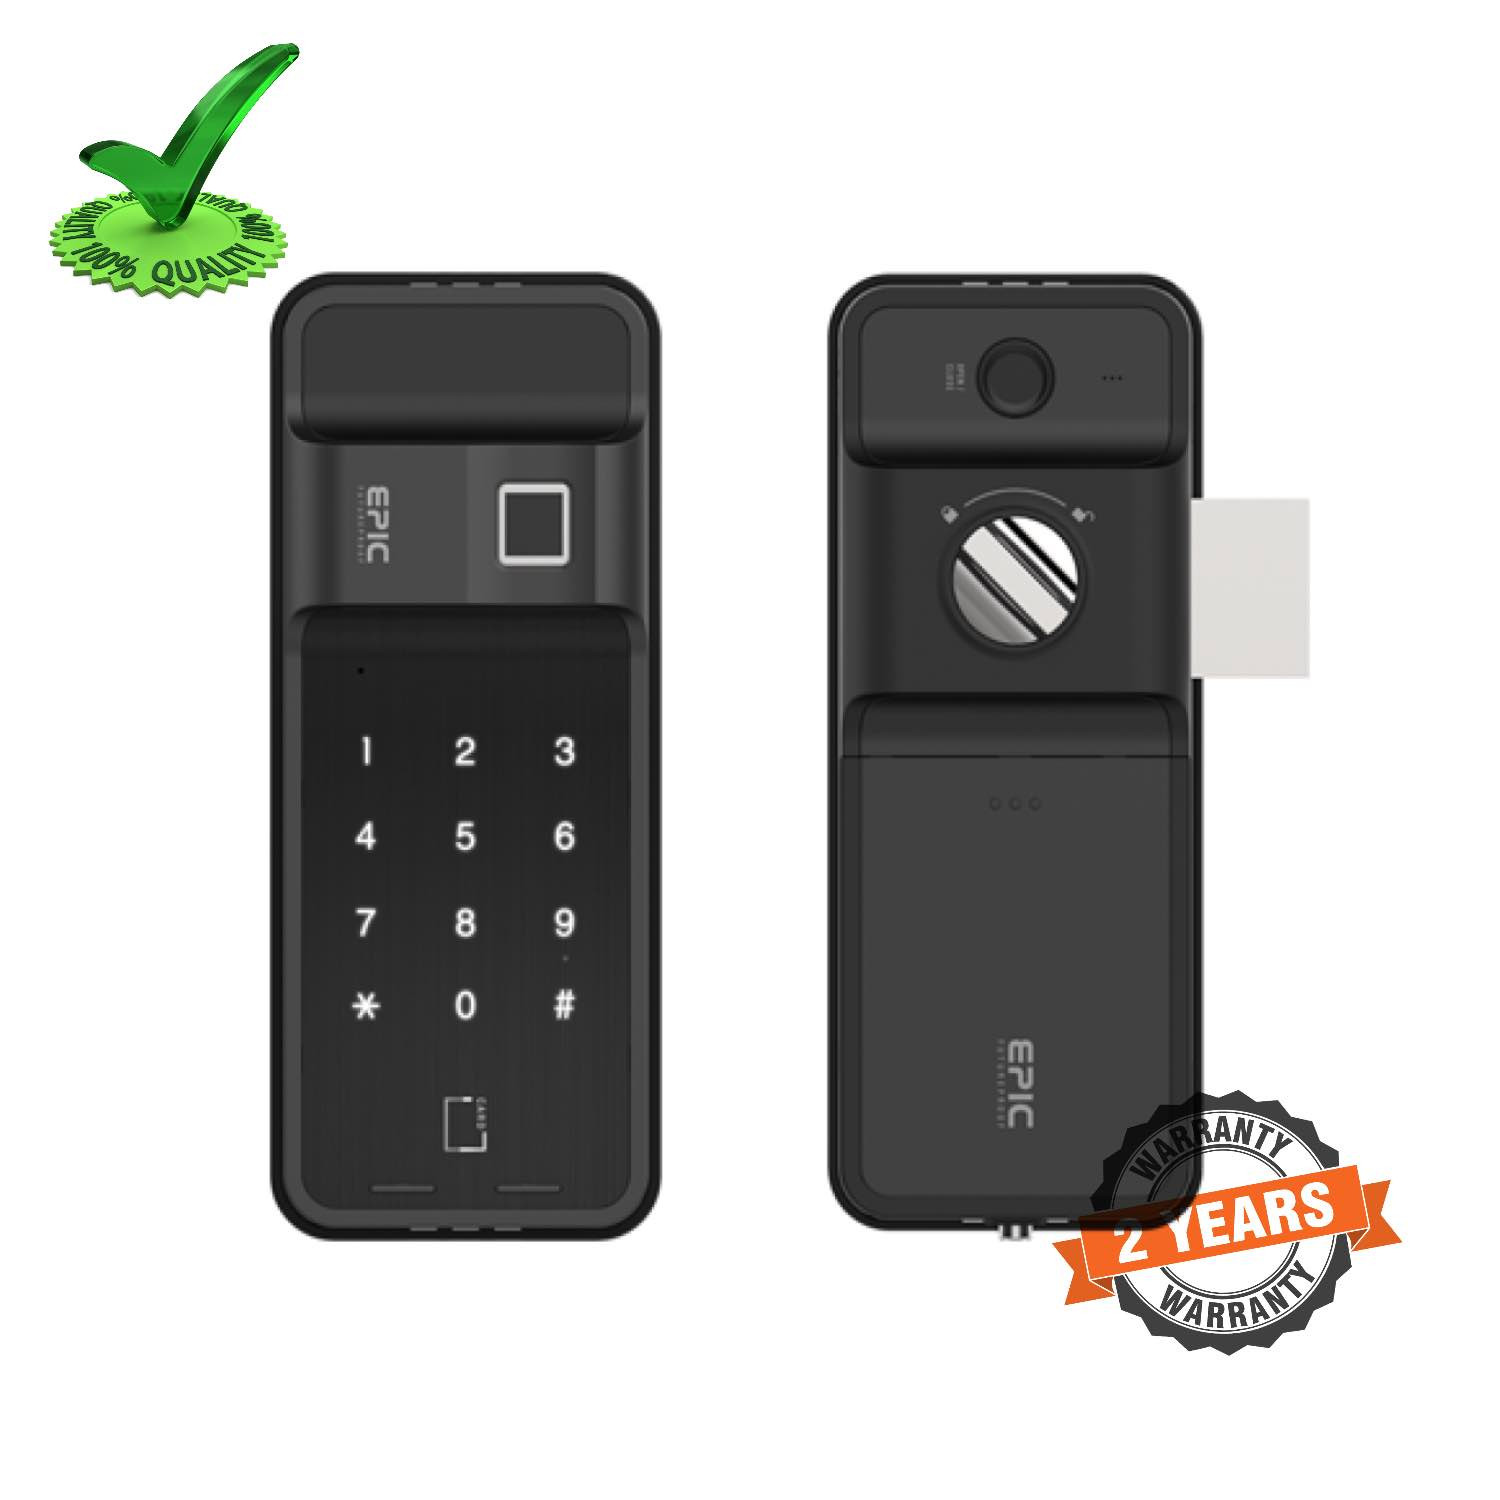 Epic ES-F500H 4way to Open Finger Print Digital Smart Door Lock